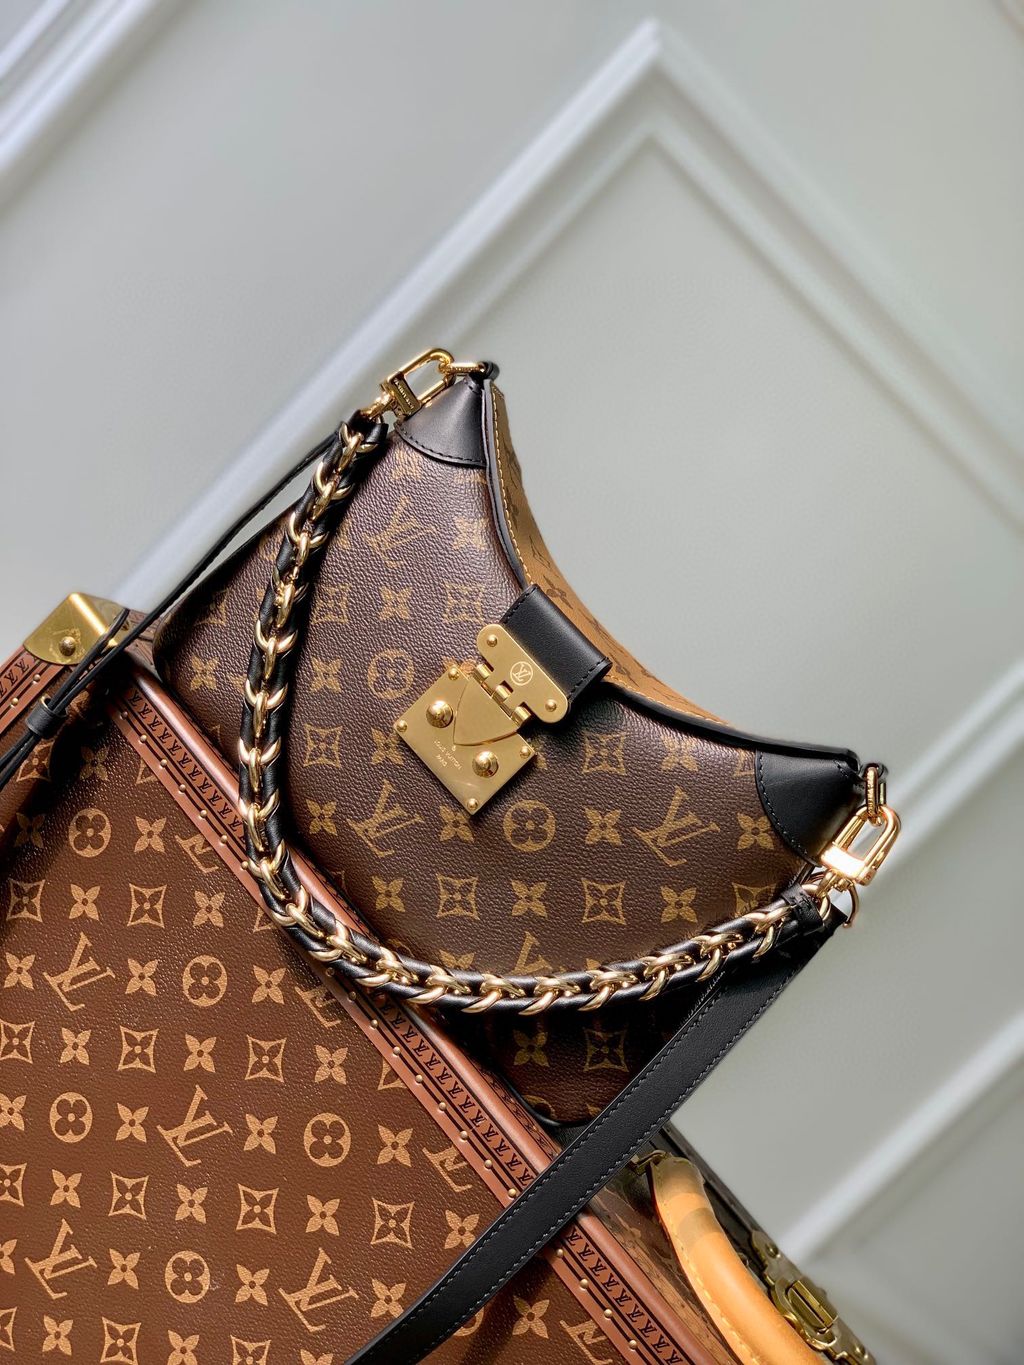 Louis Vuitton Shoulder Bags (M46659)